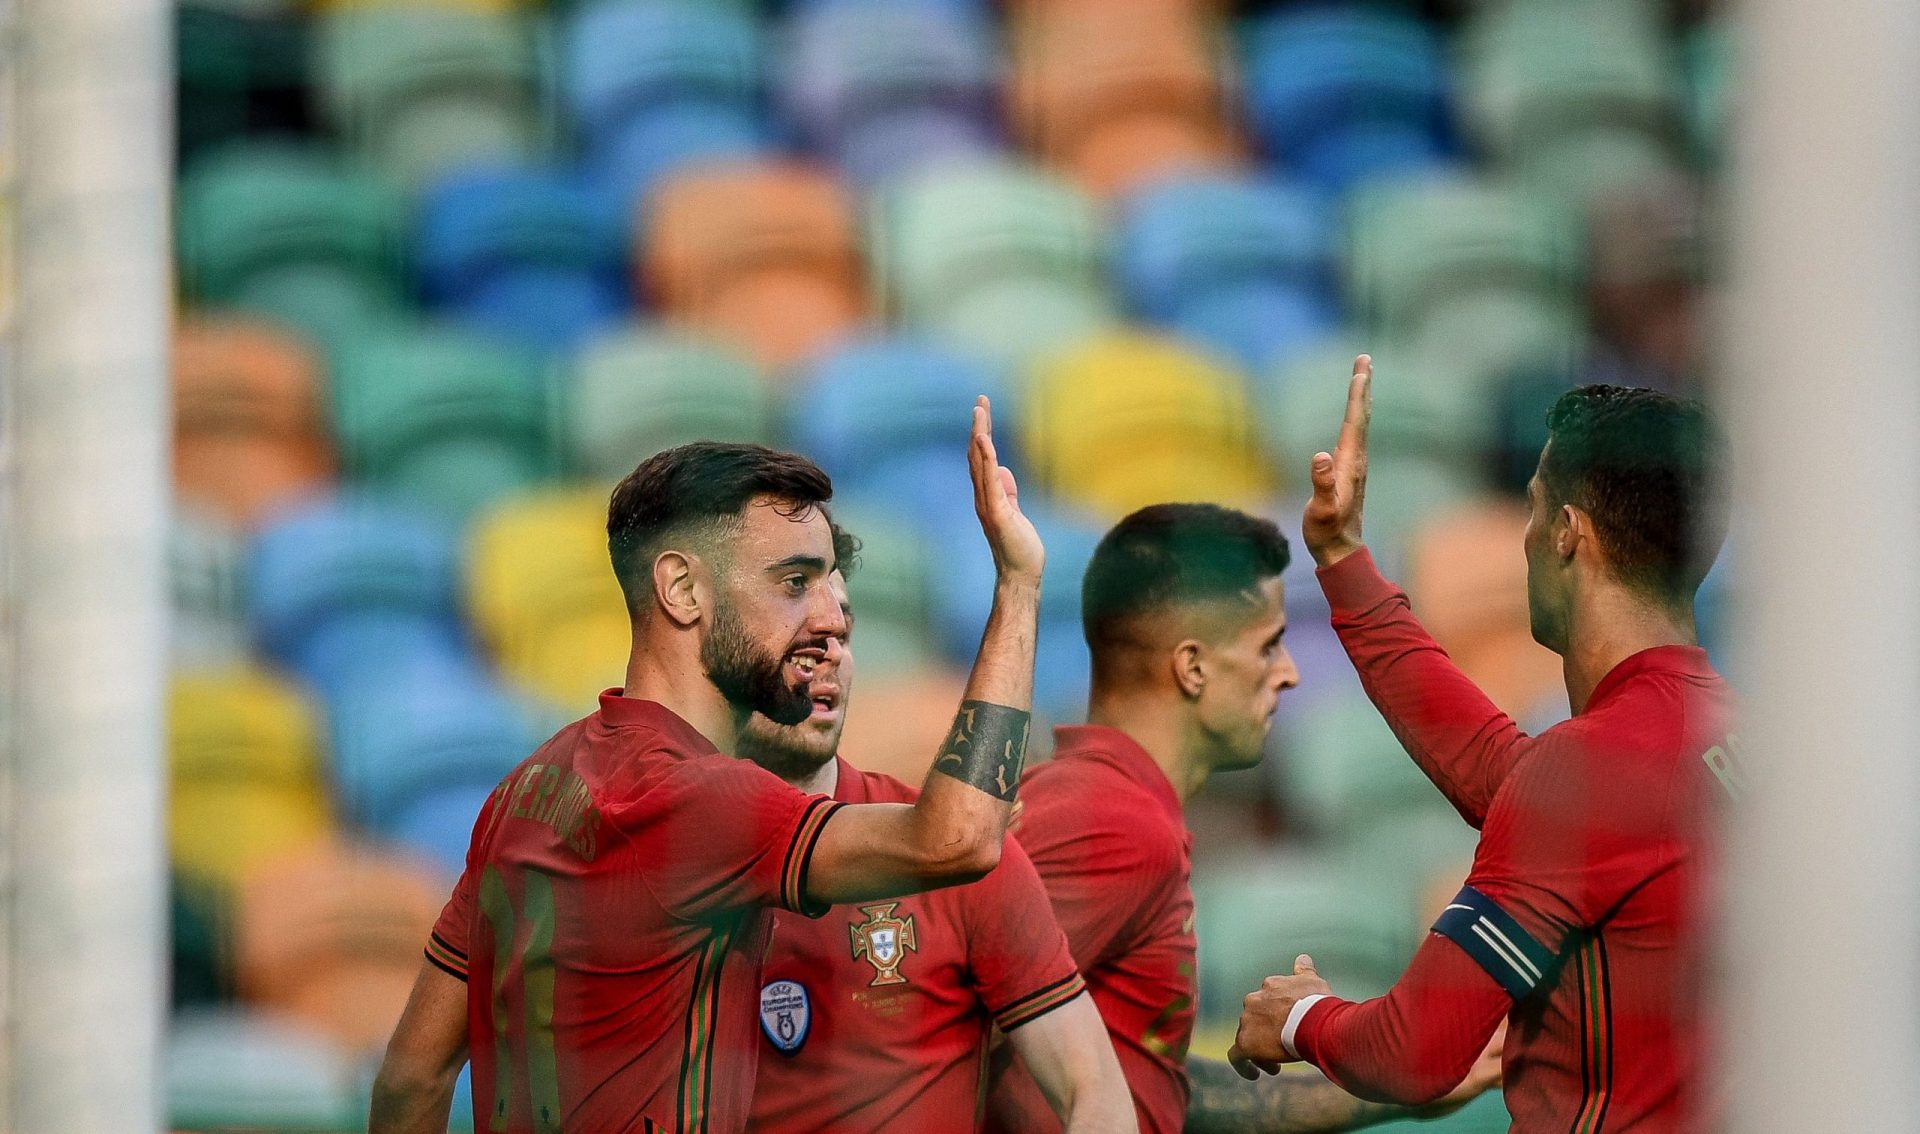 Goleada na mala da seleção para Budapeste. Portugal vence Israel por 4-0